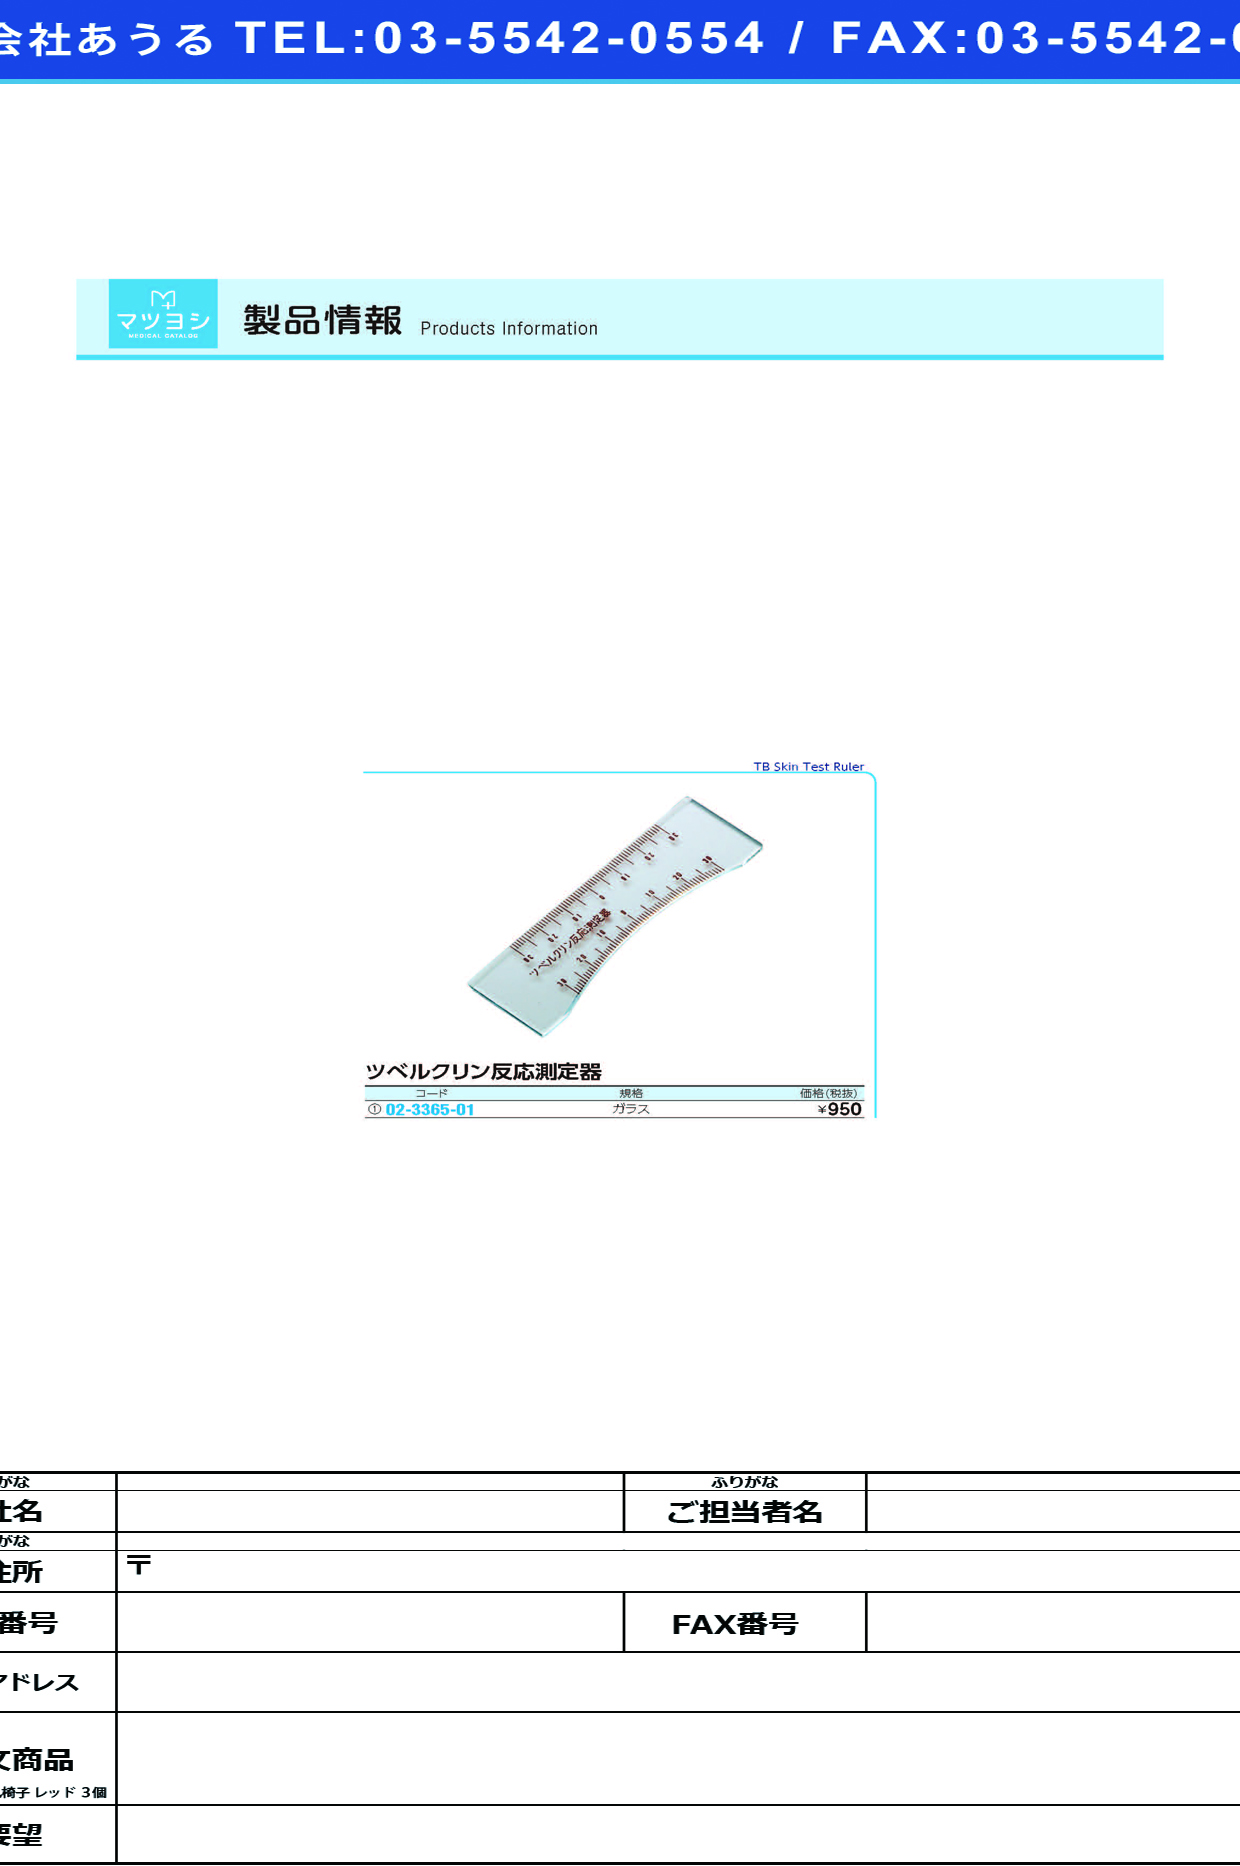 (02-3365-01)ツベルクリン反応測定器 ｶﾞﾗｽ ﾂﾍﾞﾙｸﾘﾝﾊﾝﾉｳｿｸﾃｲﾊﾞﾝ【1枚単位】【2019年カタログ商品】